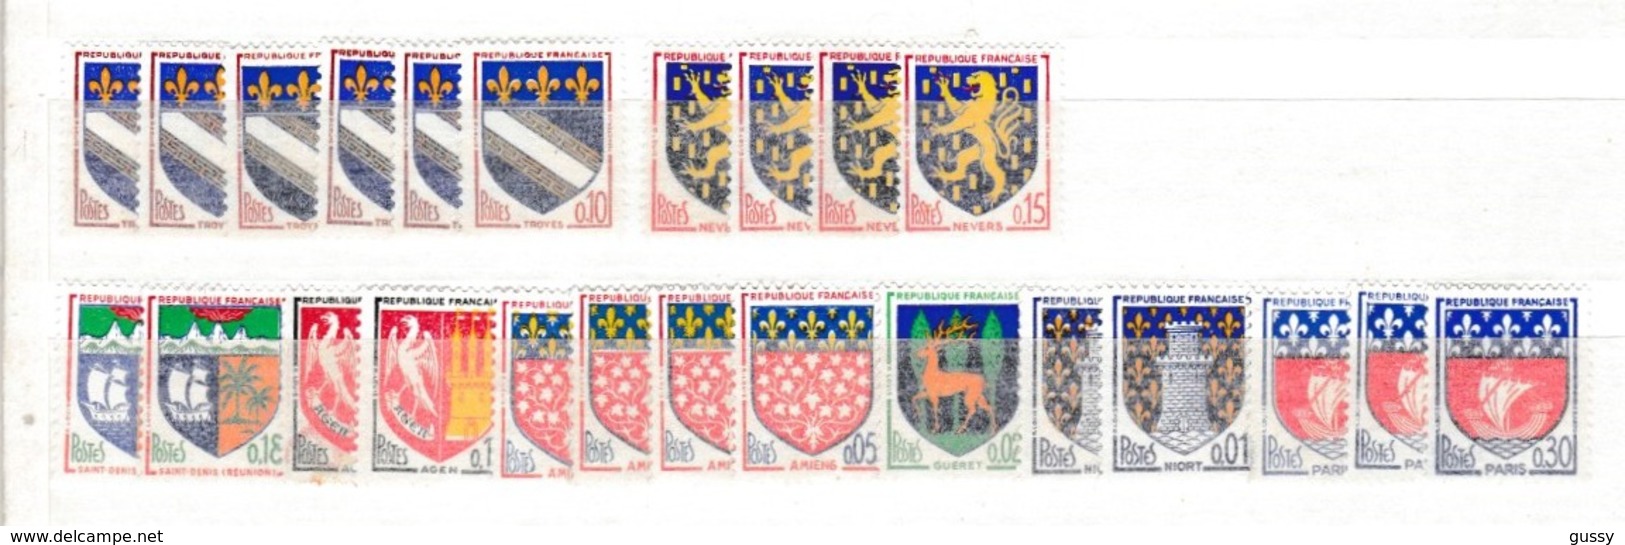 FRANCE 1958-59:  Restes de Collection, lot de timbres neufs, petits prix